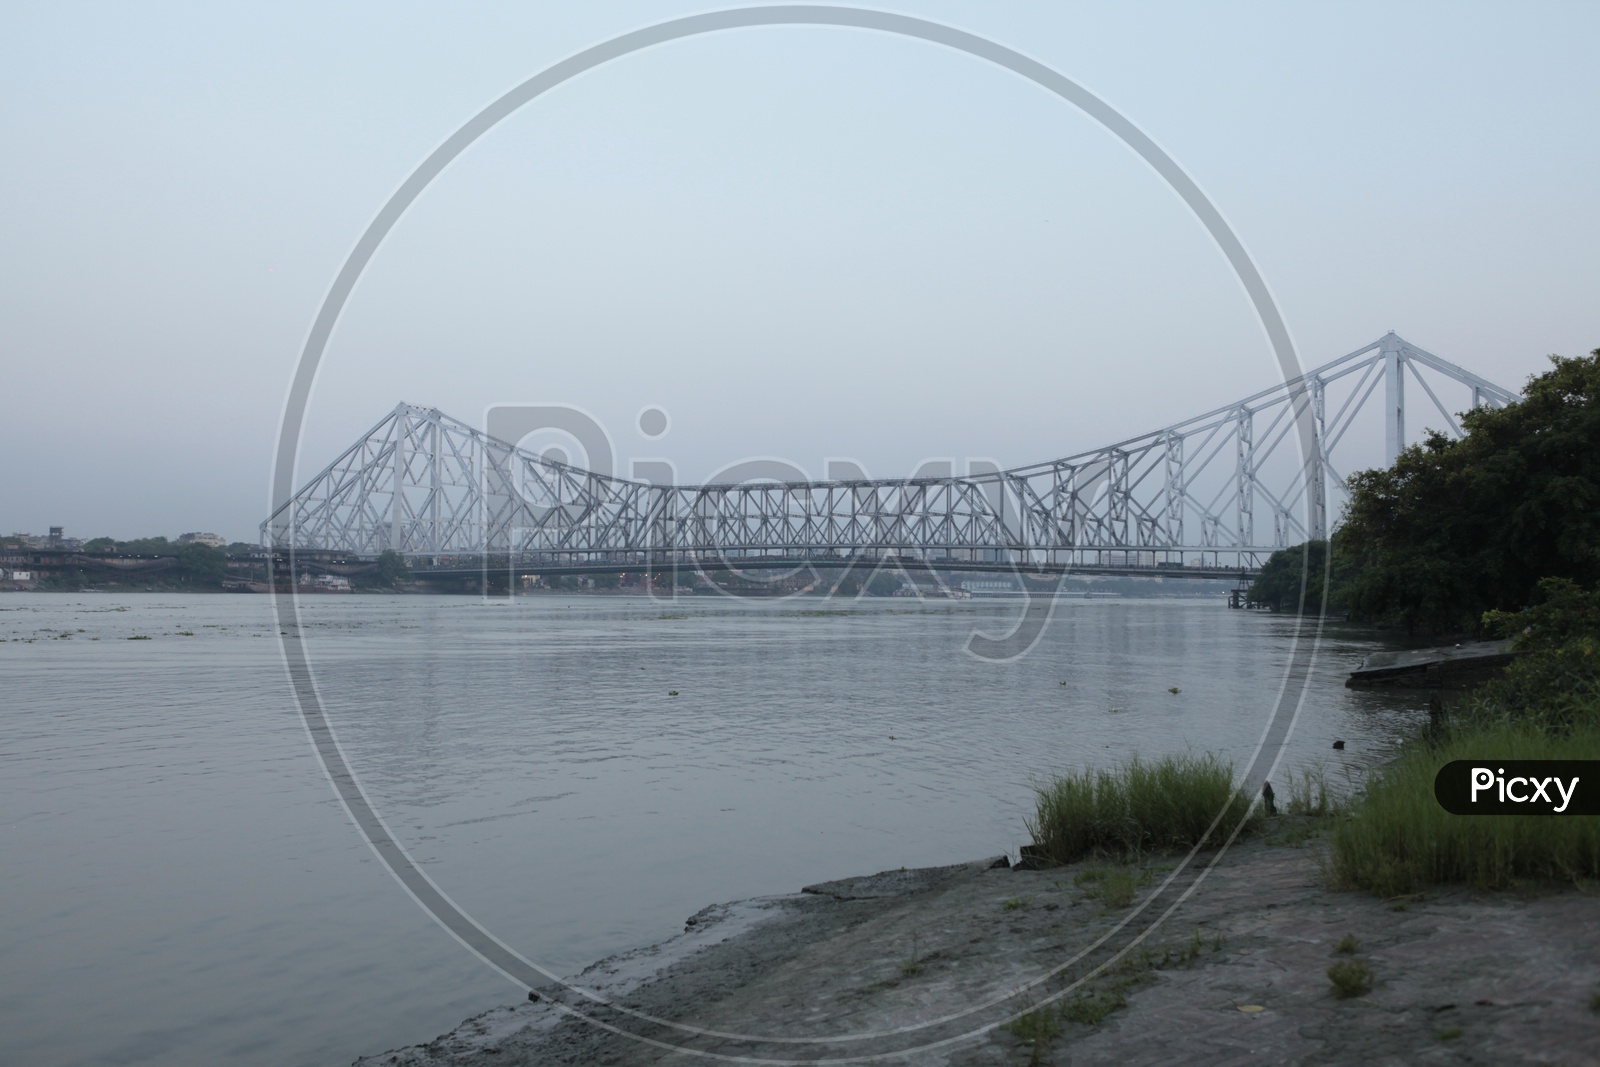 Landscape of Howrah bridge in Kolkata